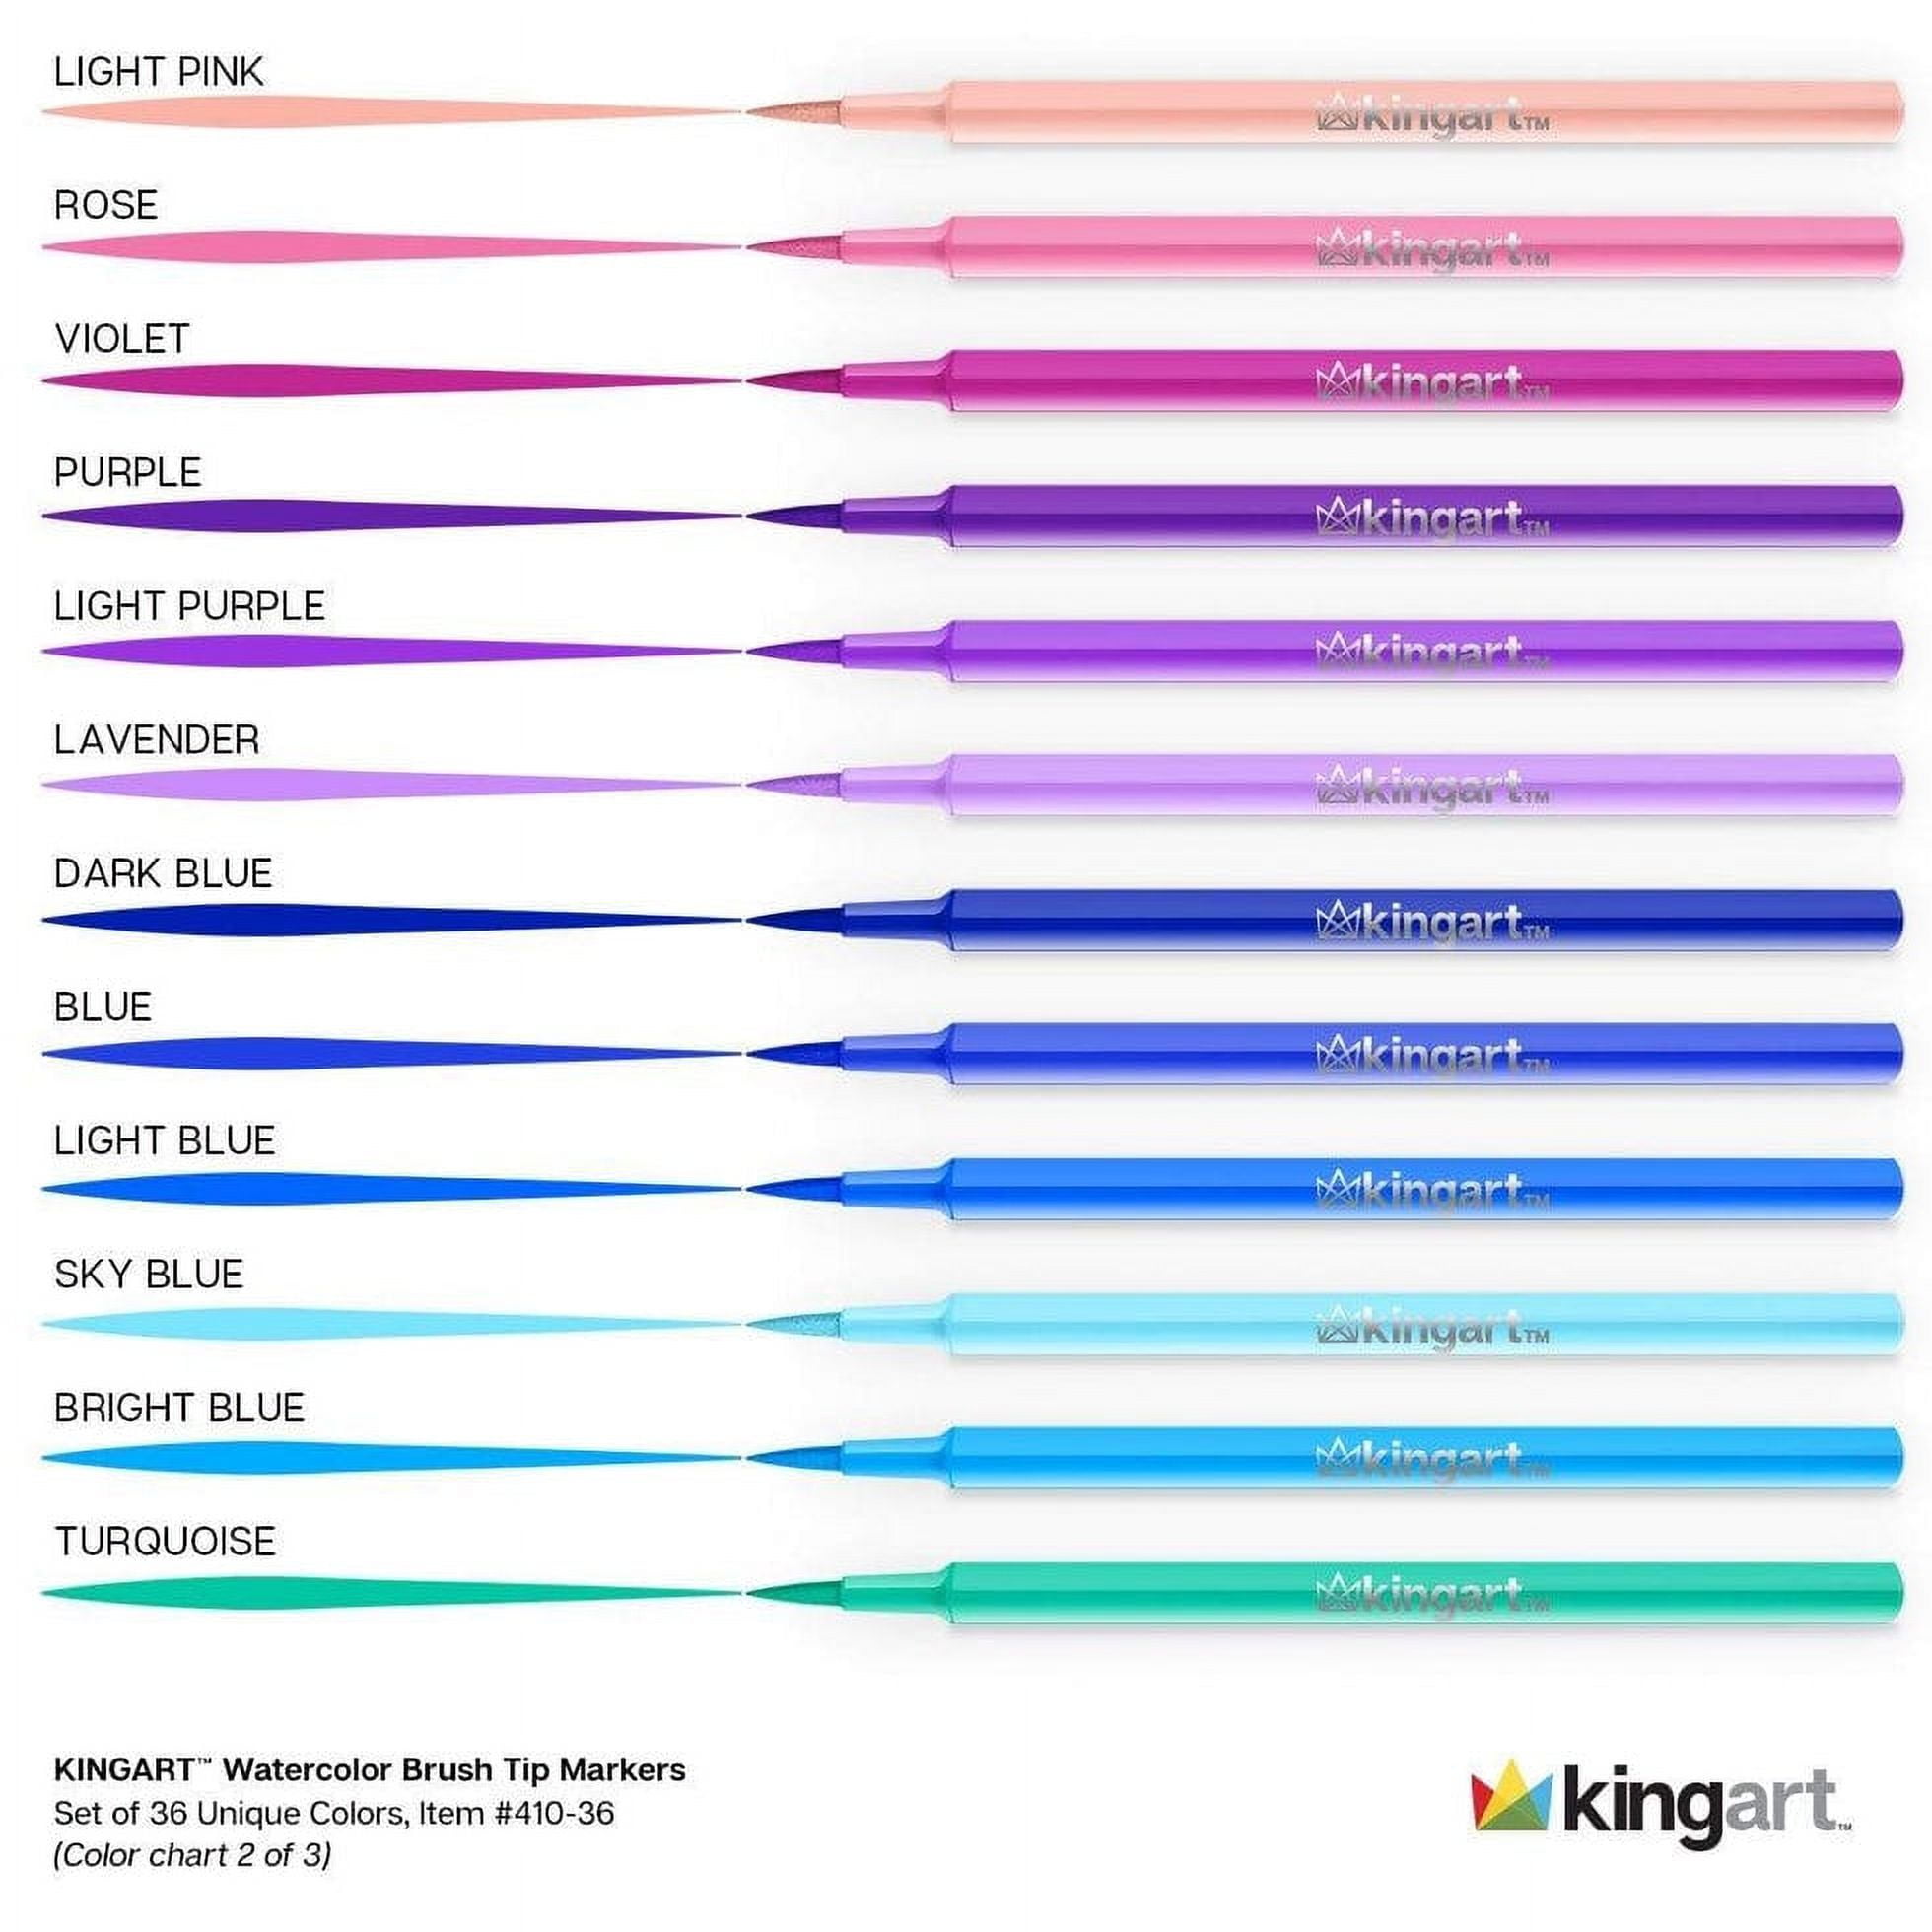 Kingart Chisel & Fine Tip Markers, Travel/Storage Case, Set of 36 Colors